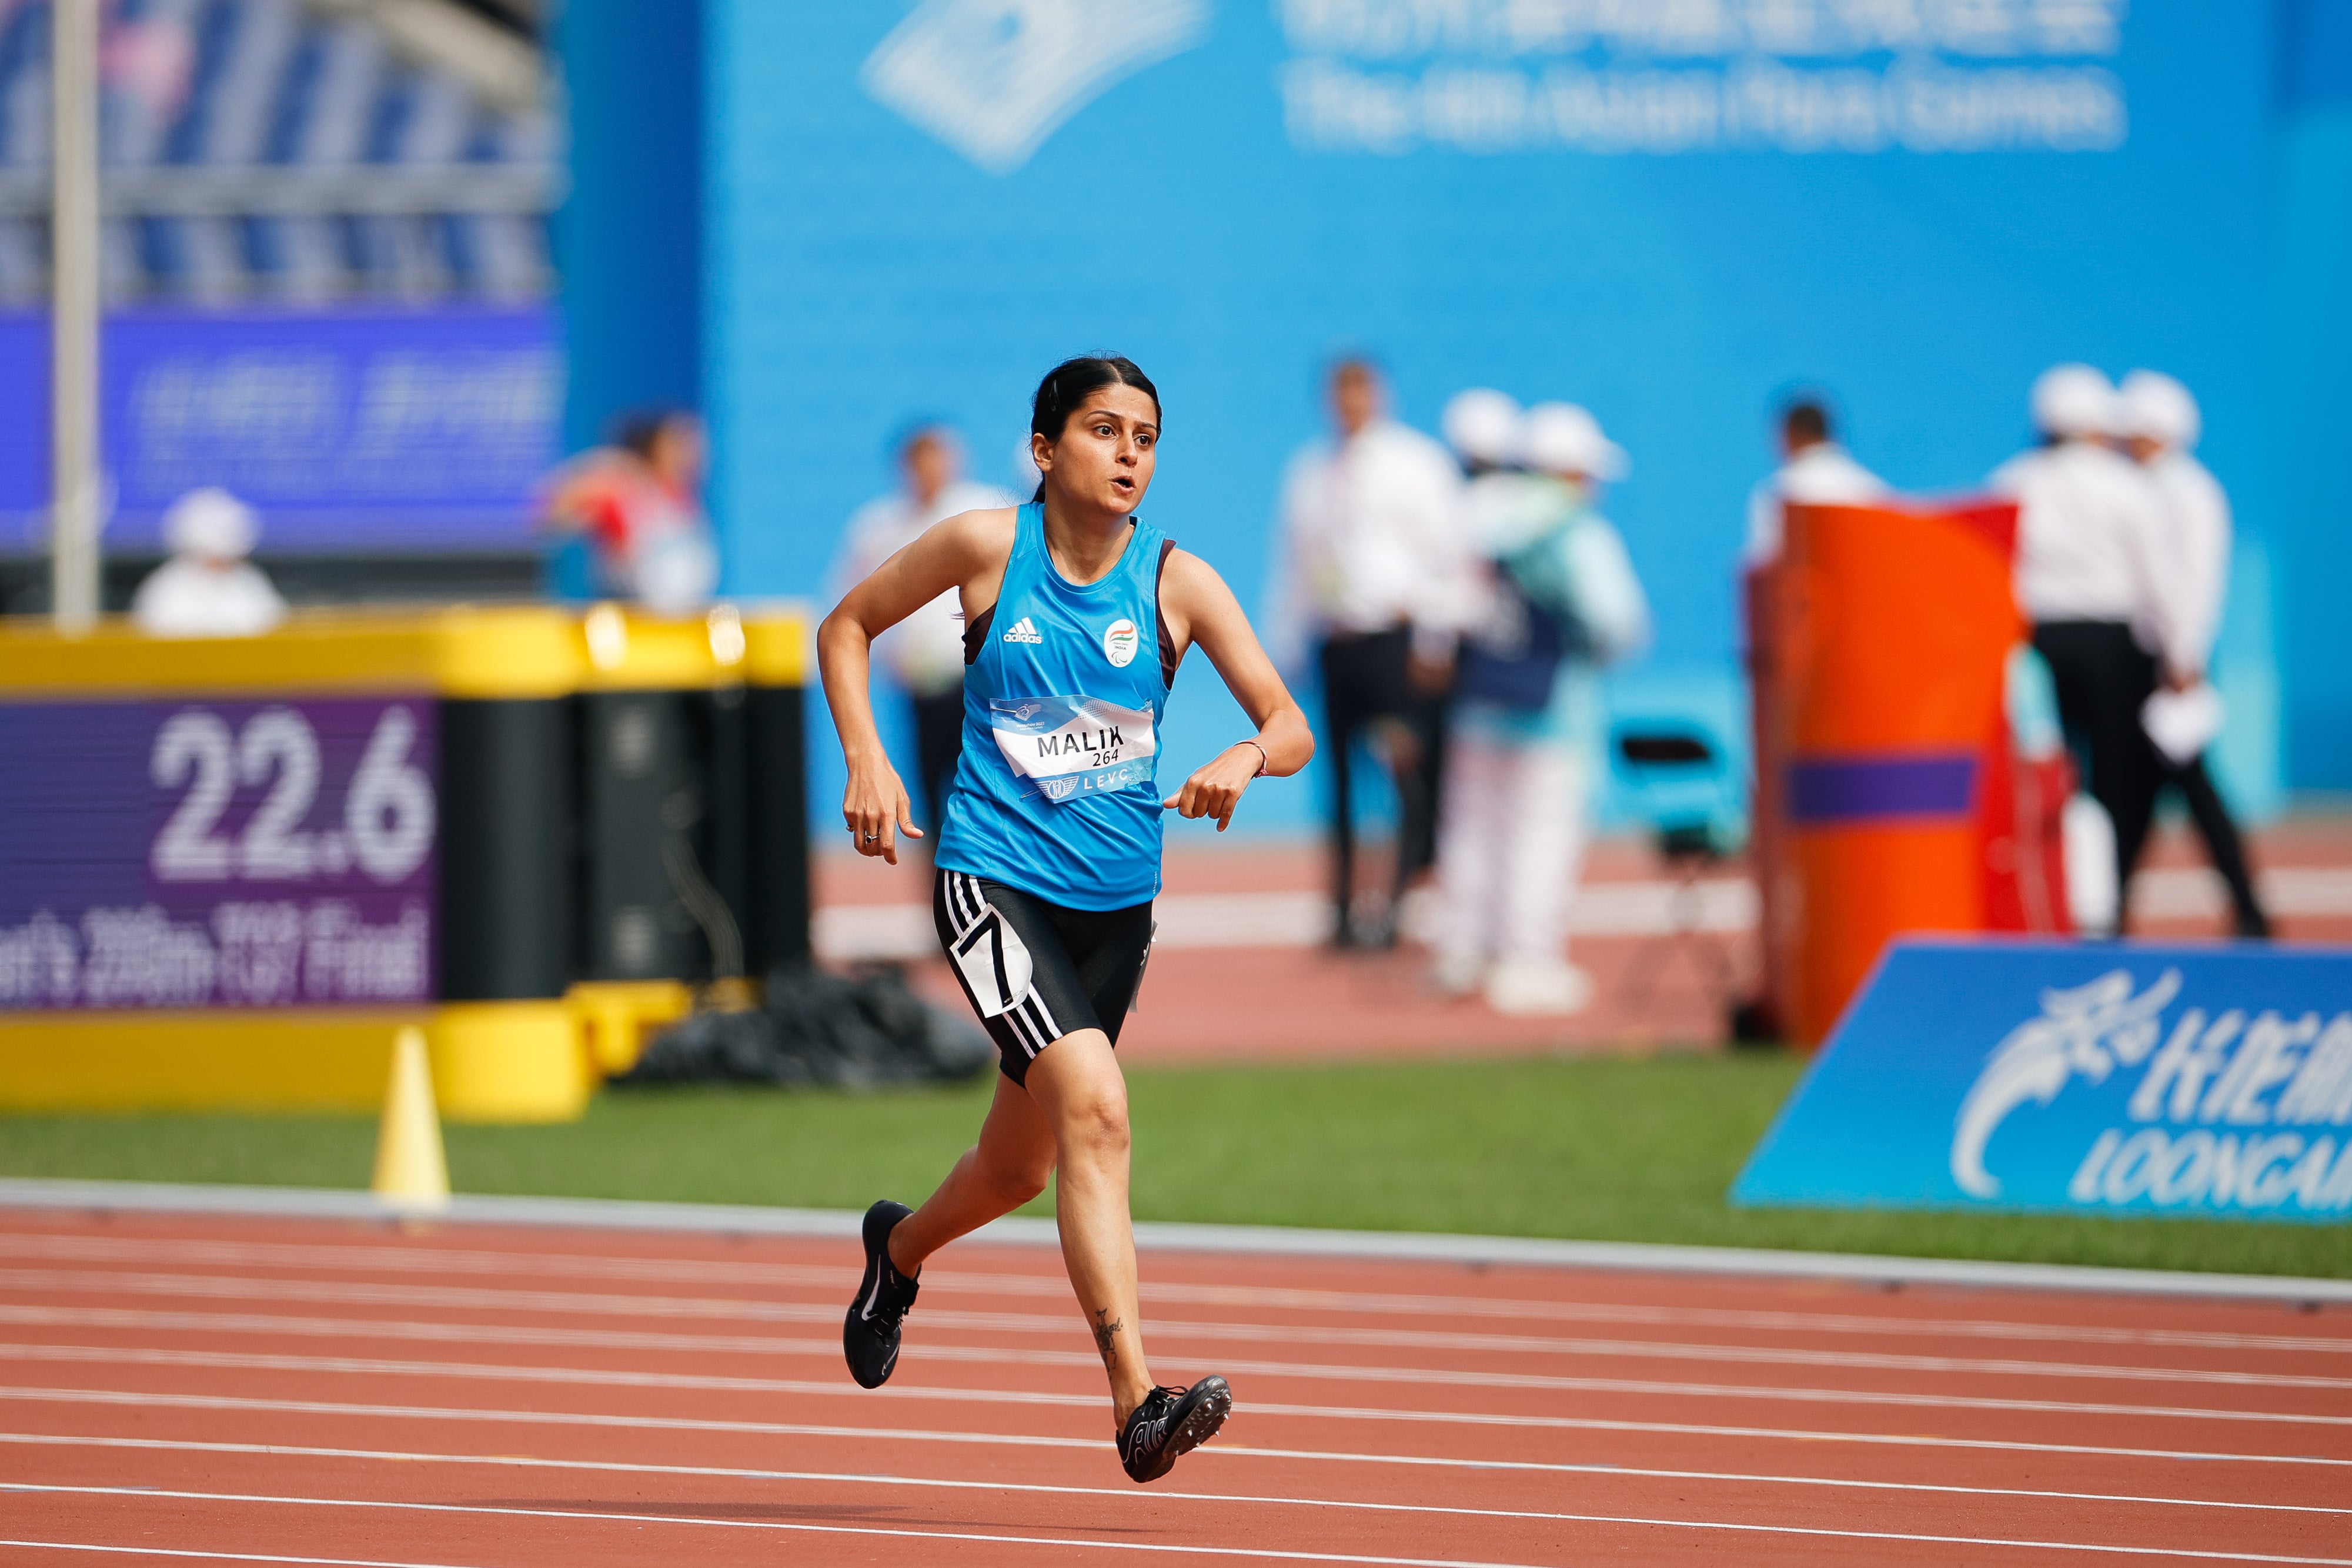 Devika running at the 4th Asian Para Games 